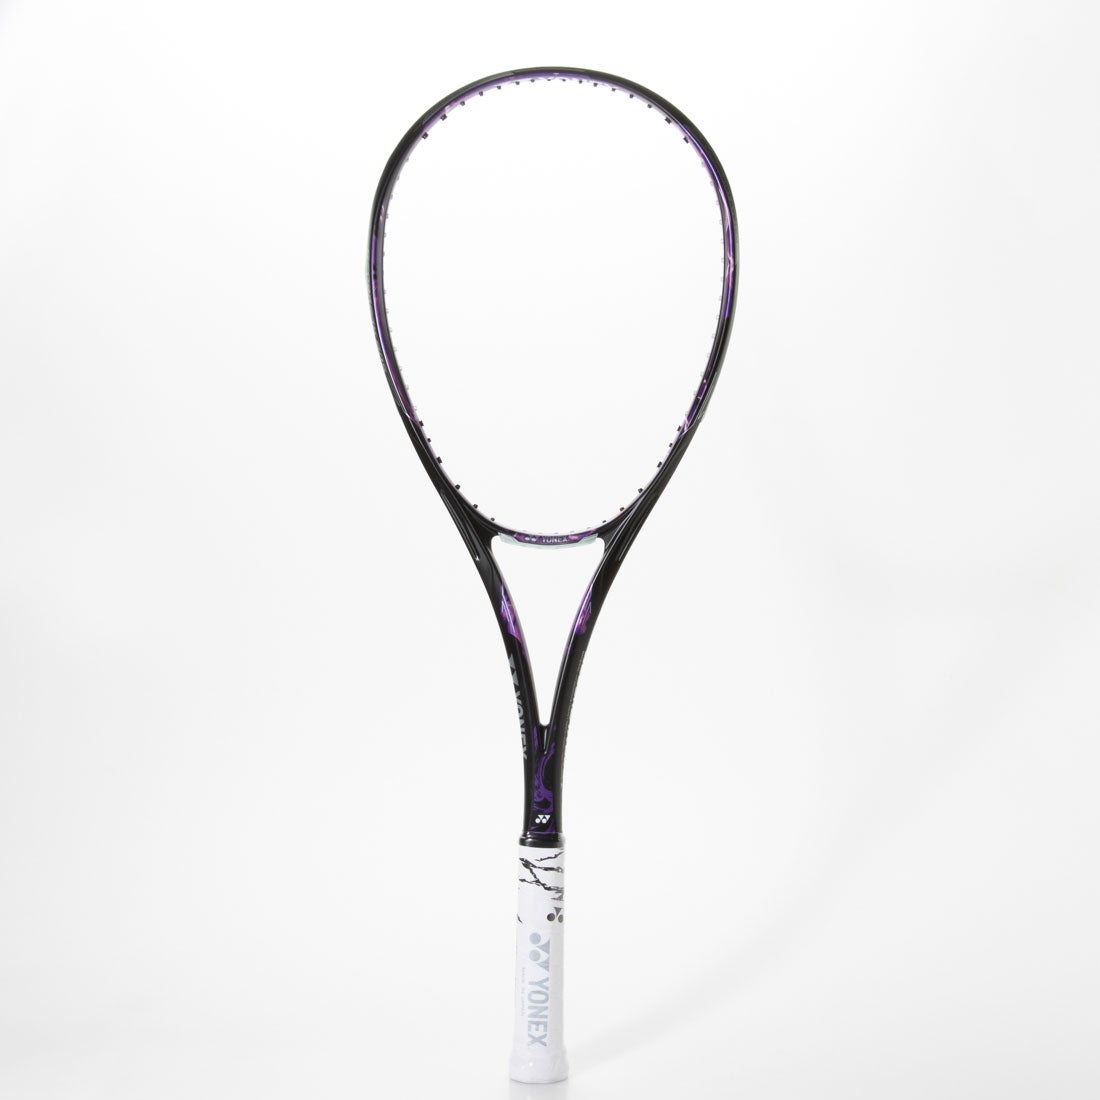 ヨネックス YONEX 軟式テニス 未張りラケット ジオブレイク80S バイオレット 未張り ソフトテニス 軟式テニス GEO80S （パープル）